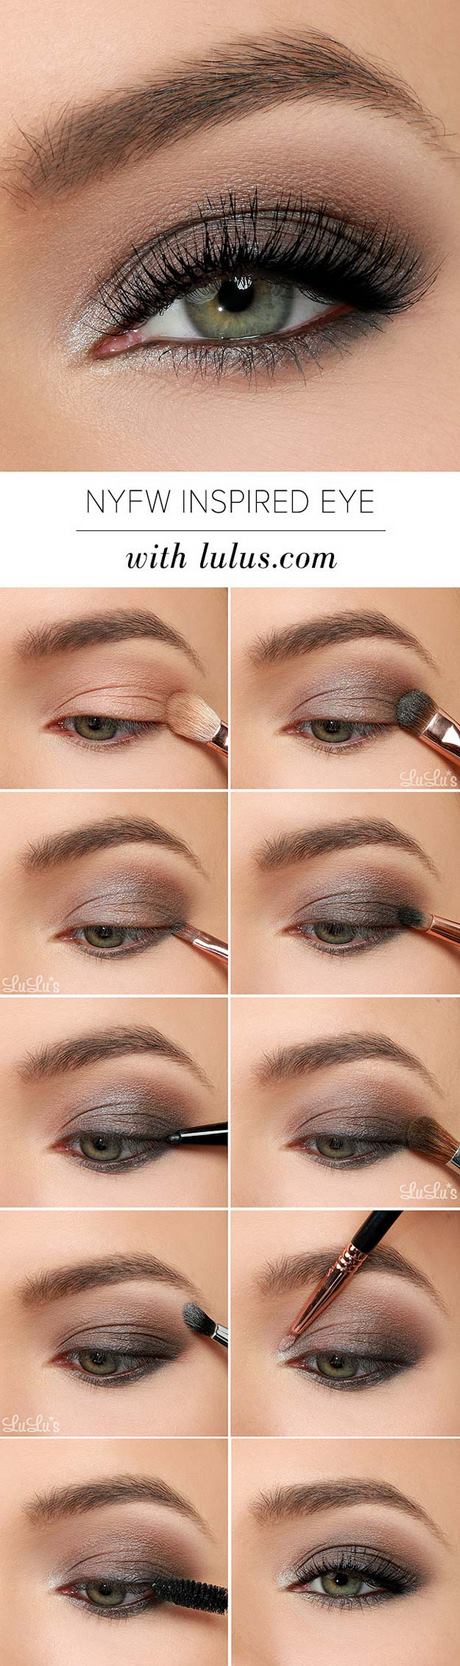 eye-makeup-tutorial-for-beginners-71_4 Les voor beginners met oogmake-up